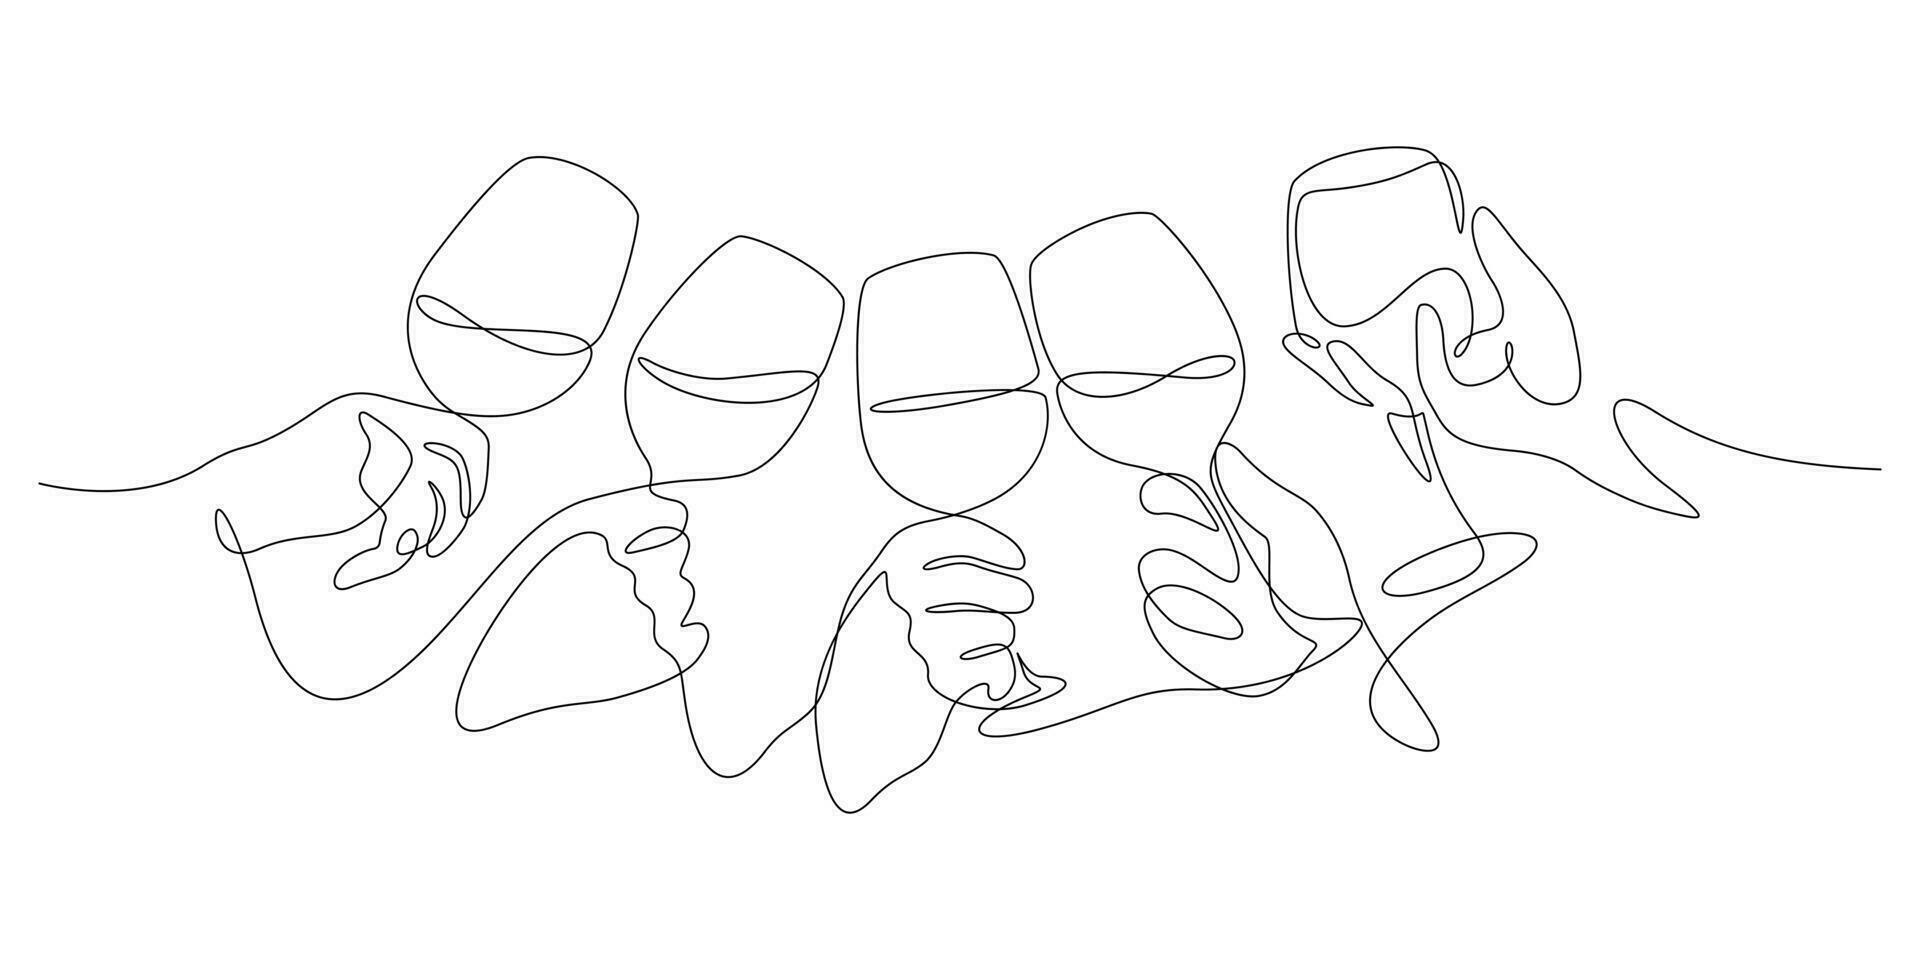 wijn gerinkel feestelijk geroosterd brood concept handen Holding en wijn bril in een lijn tekening vector